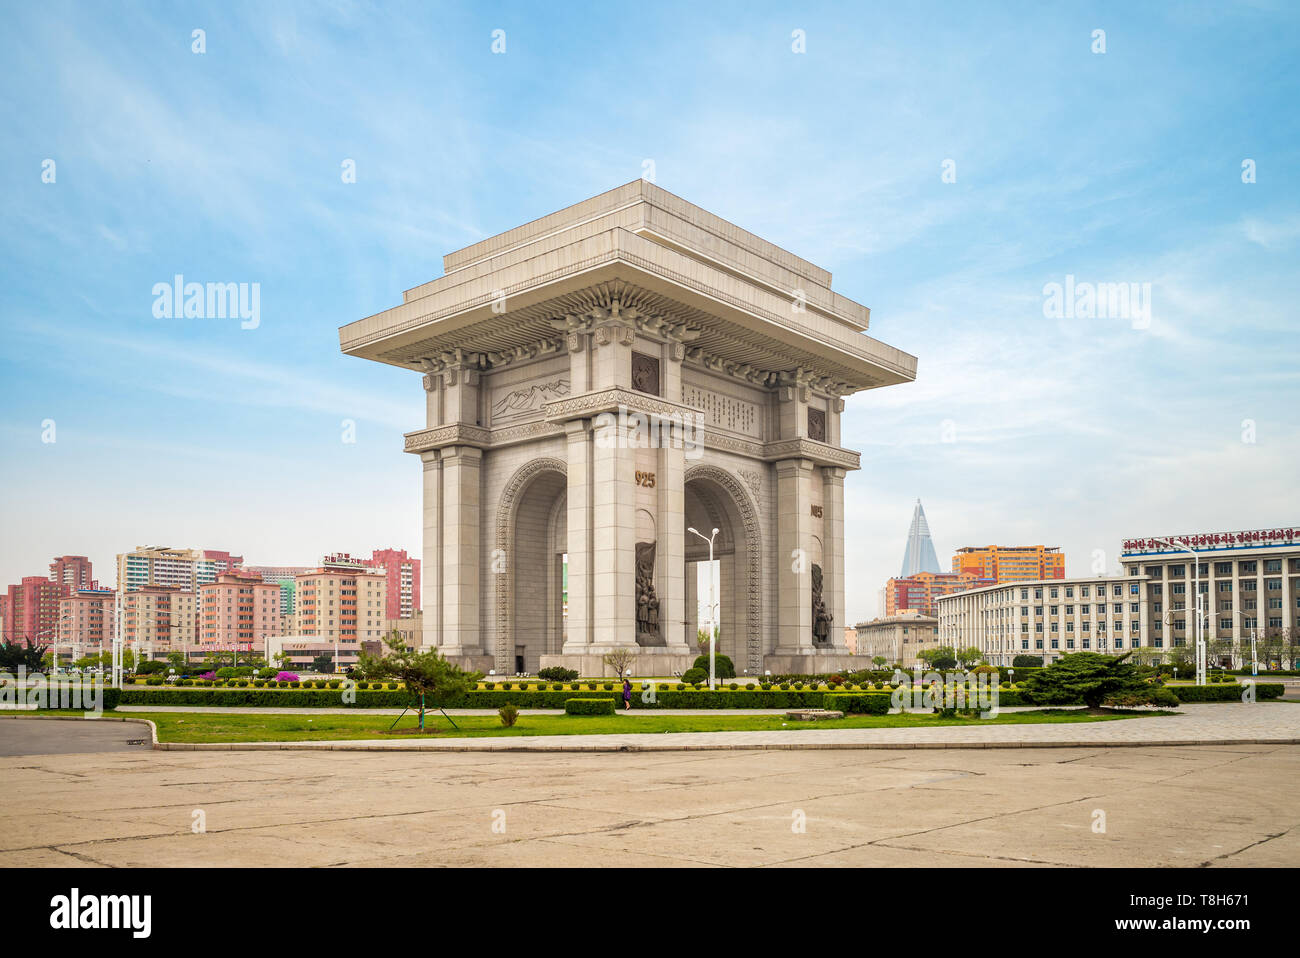 Pyongyang, Corea del Norte - Abril 29, 2019: el Arco del Triunfo, un arco de triunfo construido para conmemorar la resistencia del Ejército Popular de Corea a Japón desde 1925 hasta 1945. Foto de stock